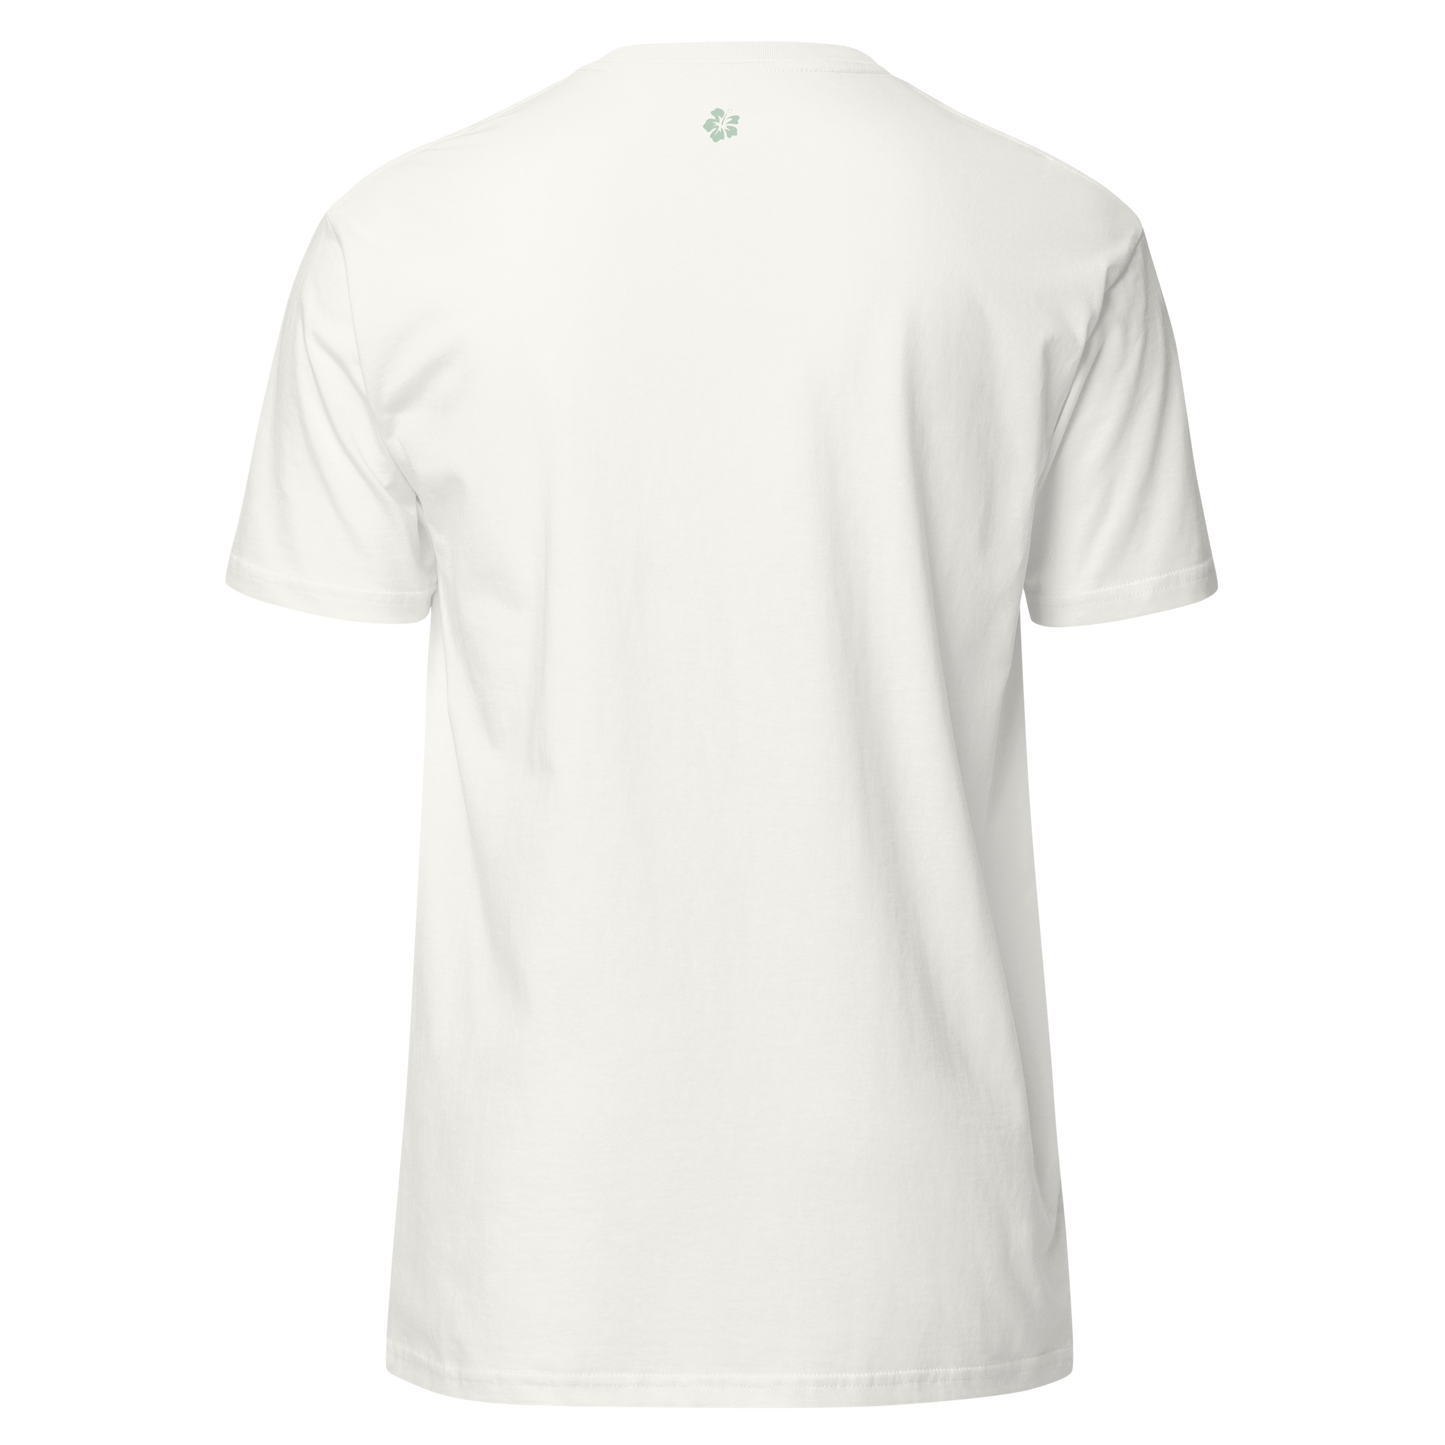 Maungakiekie / One Tree Hill organic cotton T-shirt